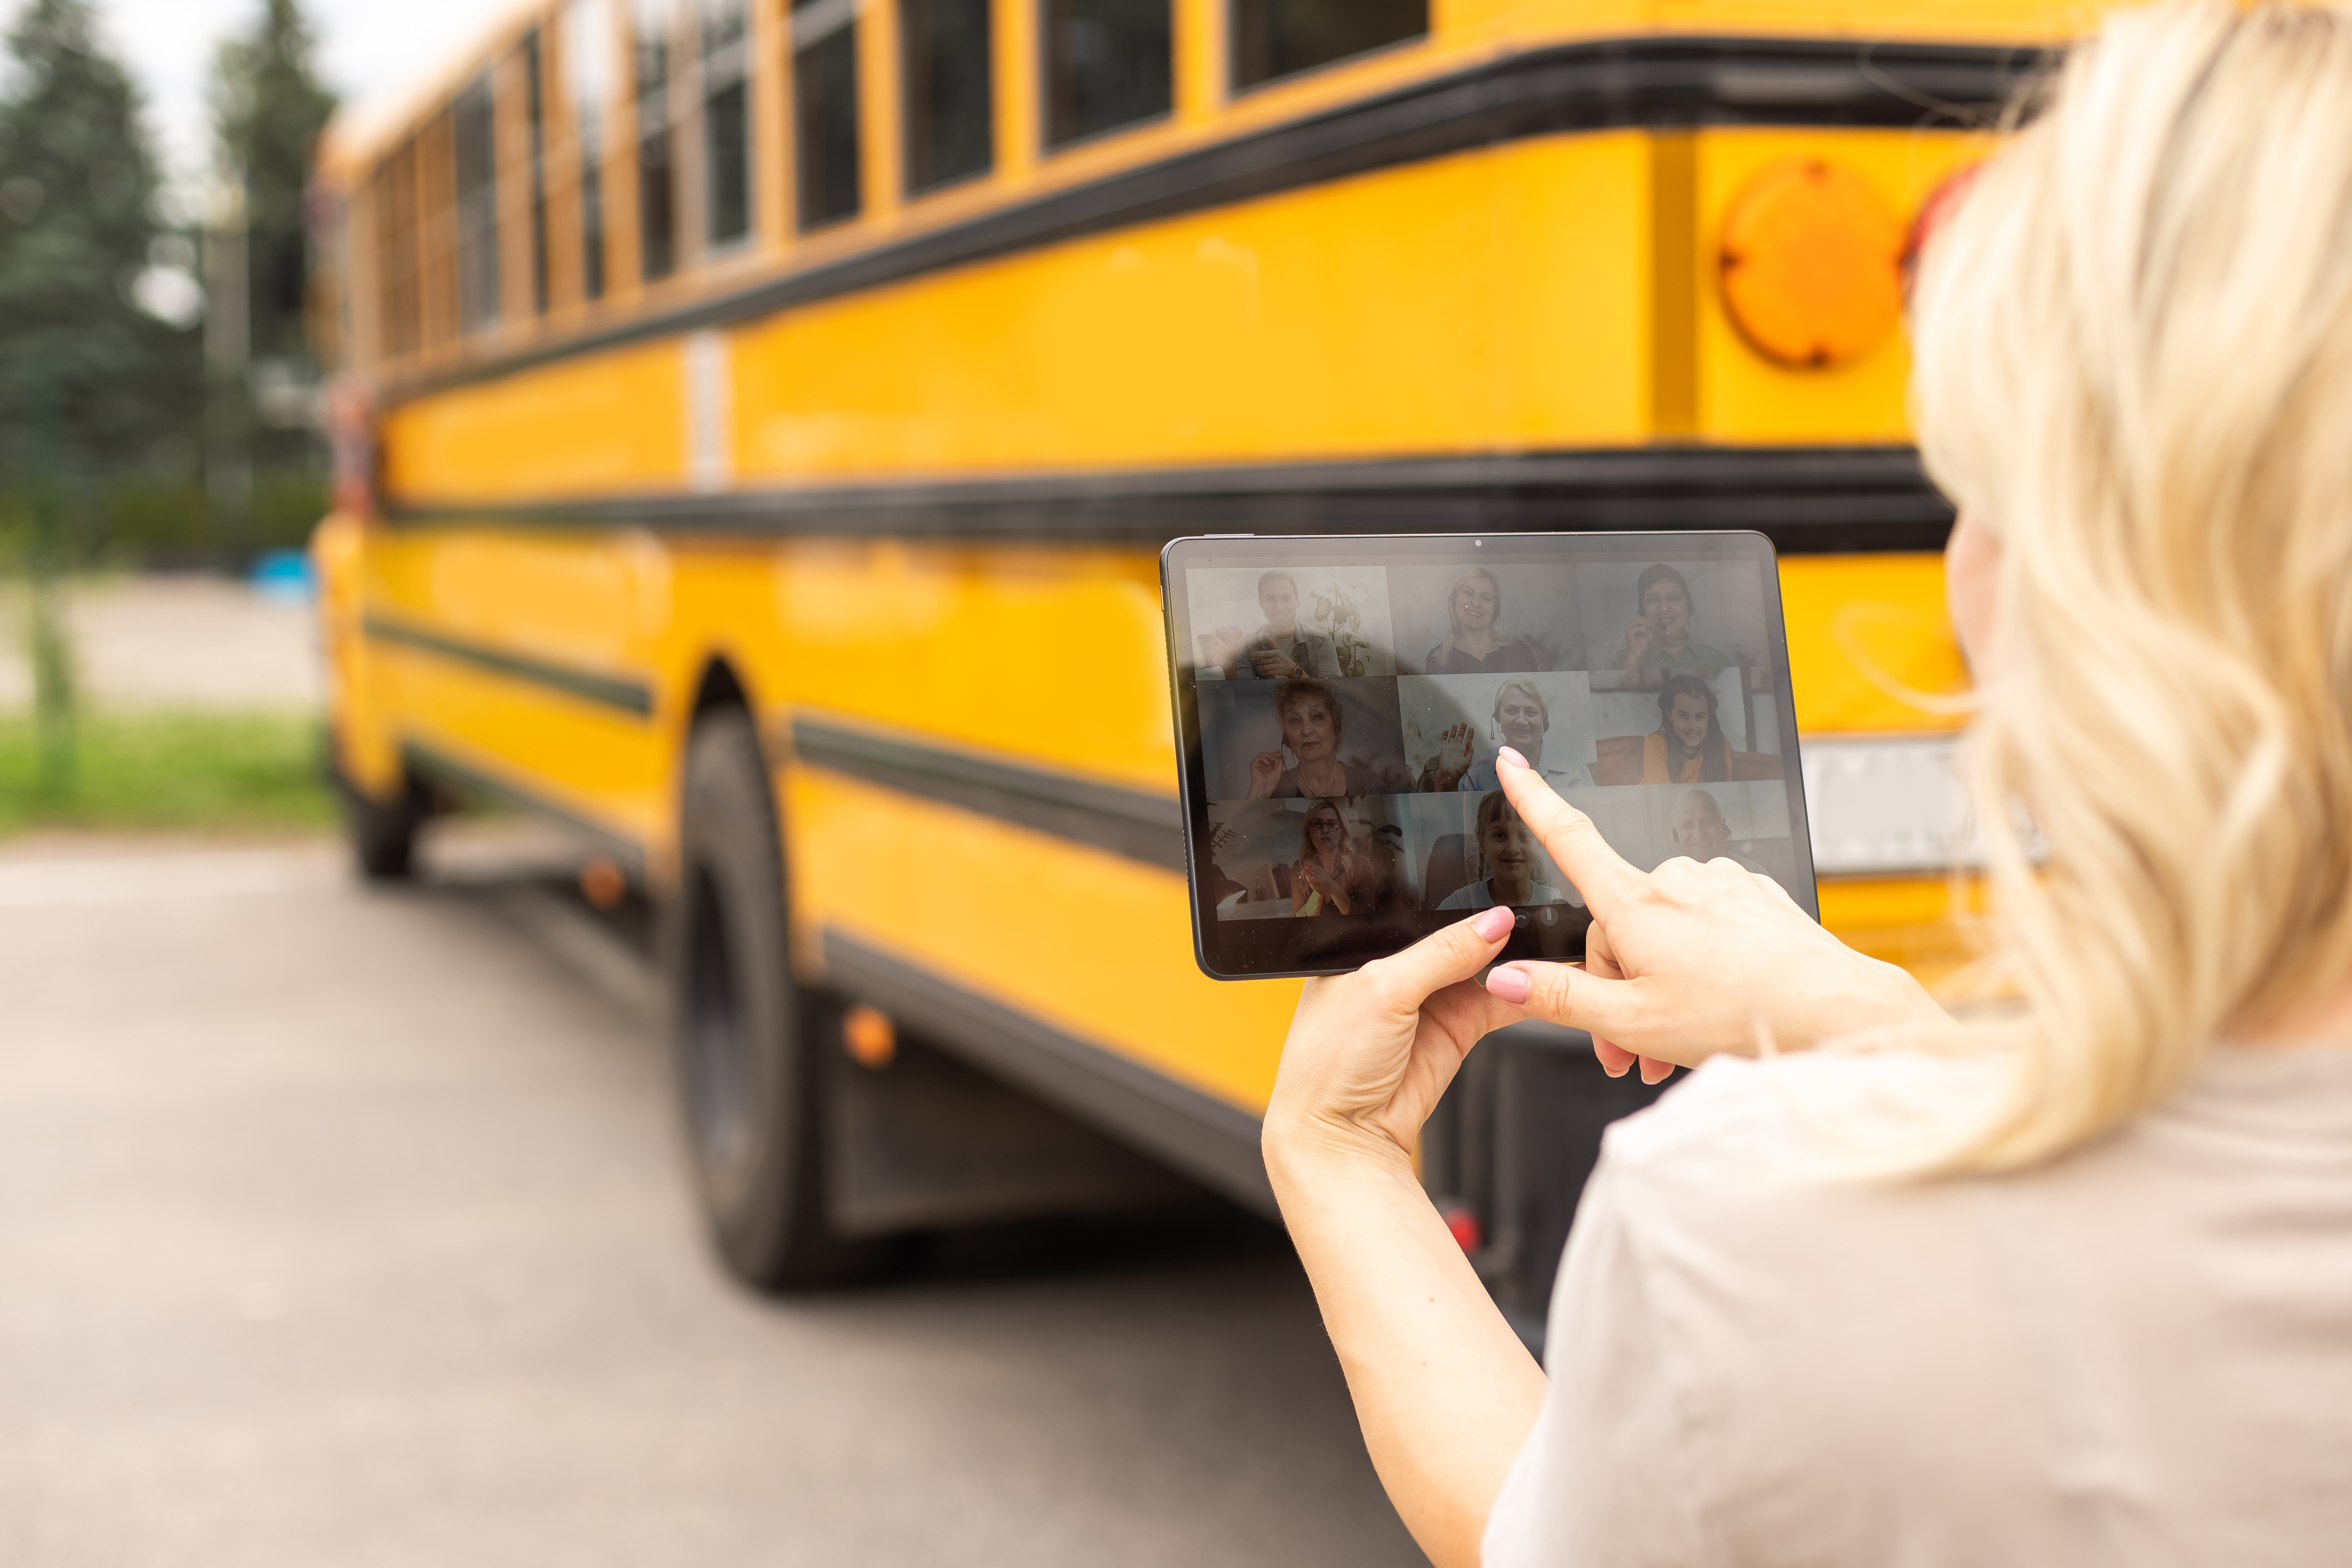 SpaceX хочет поставить интернет Starlink на сельские школьные автобусы